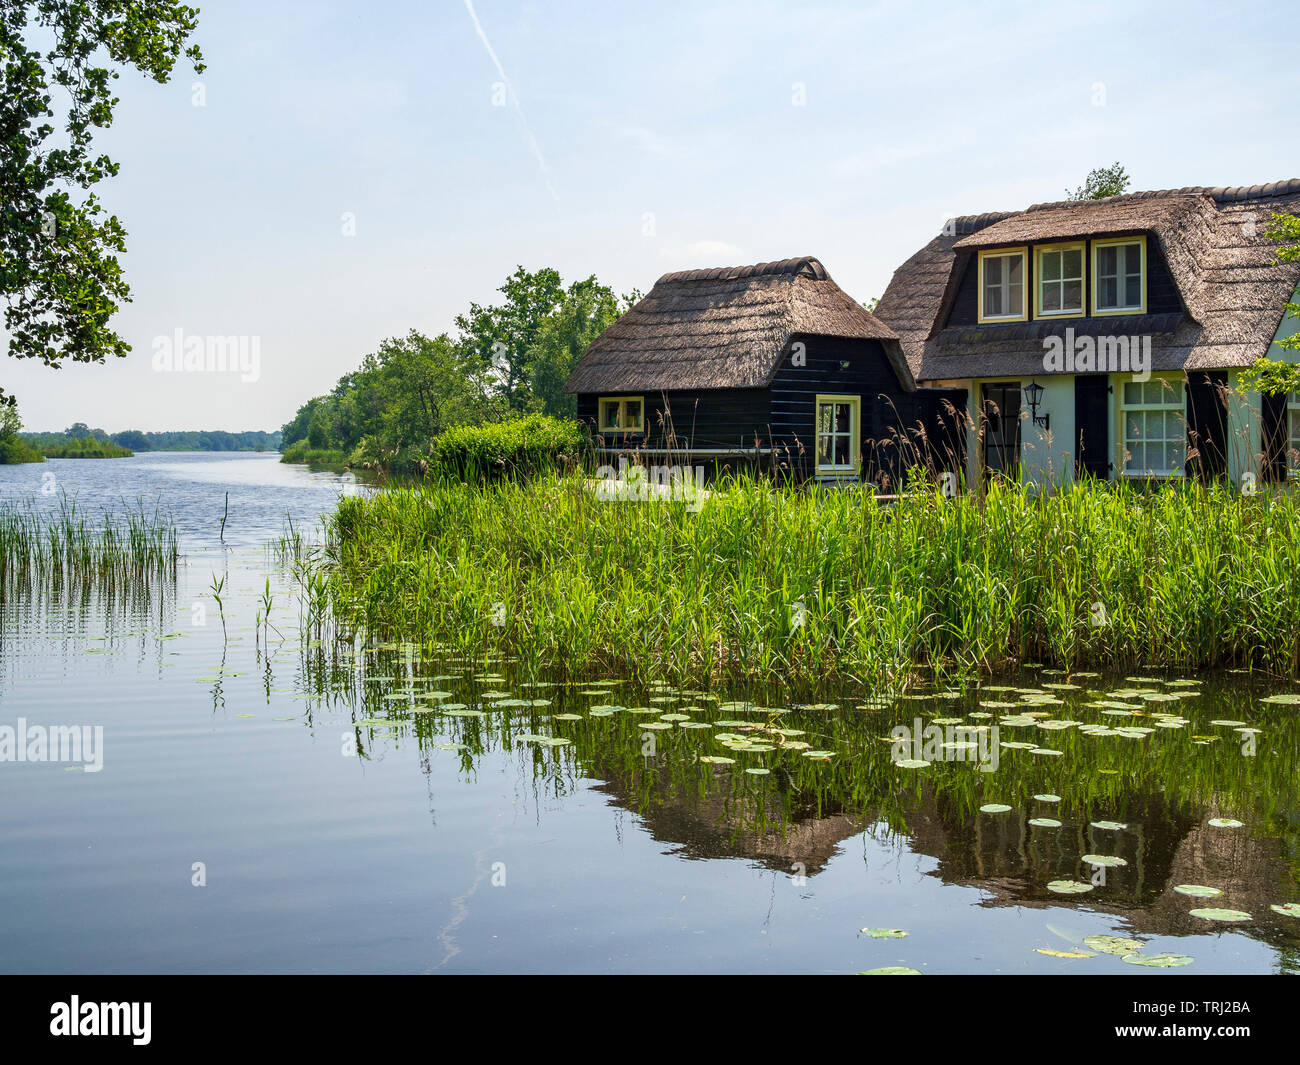 Una casa in stile tradizionale sul lago "Ankeveense Plassen', creato da torba raccolta, in Ankeveen, Paesi Bassi. Foto Stock